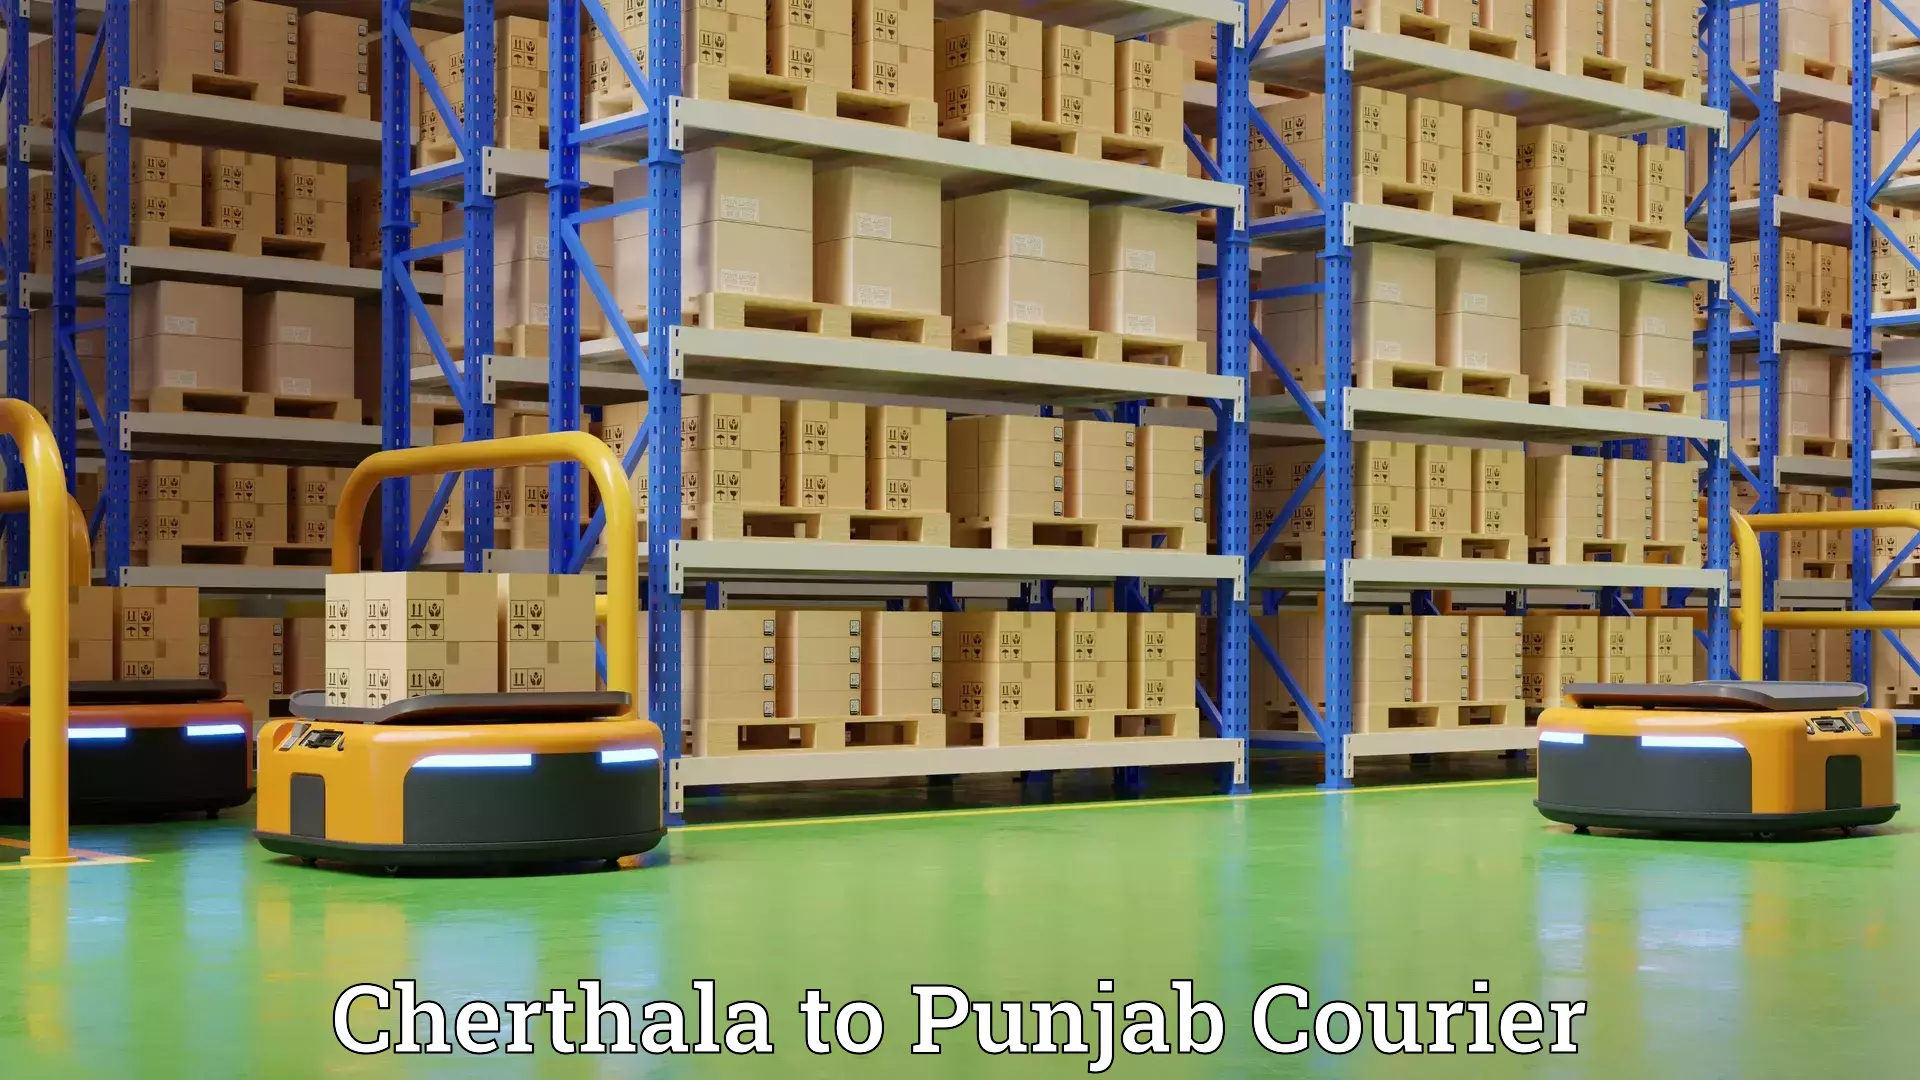 Full-service furniture transport Cherthala to Punjab